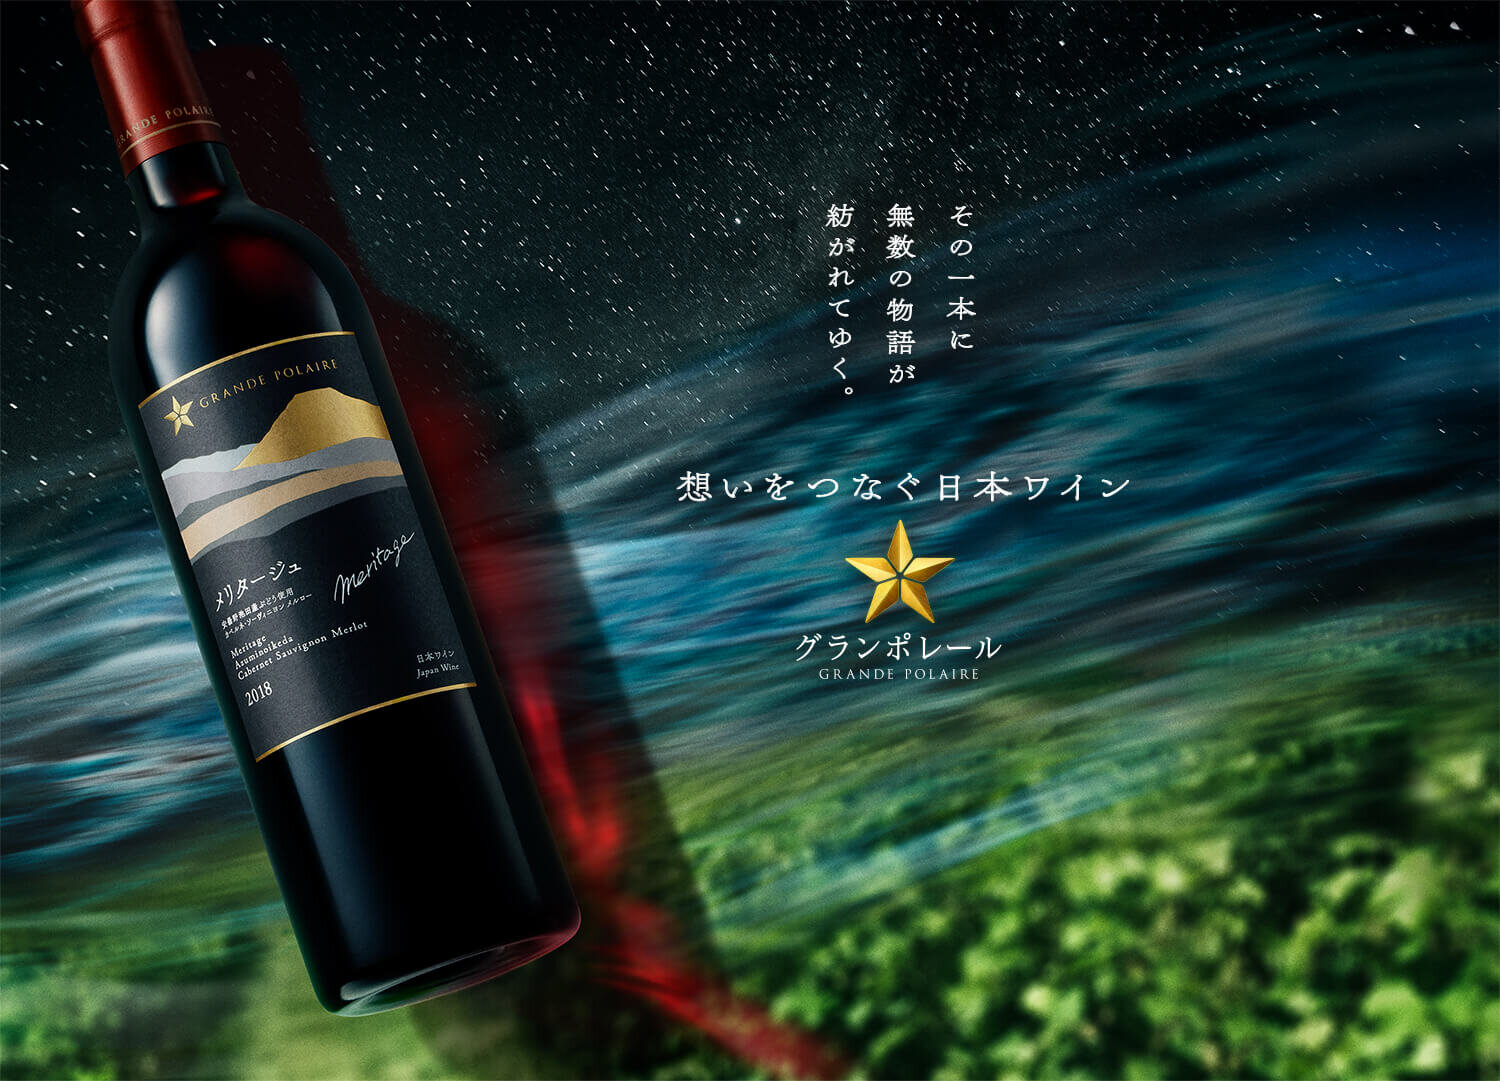 その一本に無数の物語が紡がれてゆく。 想いをつなぐ日本ワイン グランポレール GRANDE POLAIRE